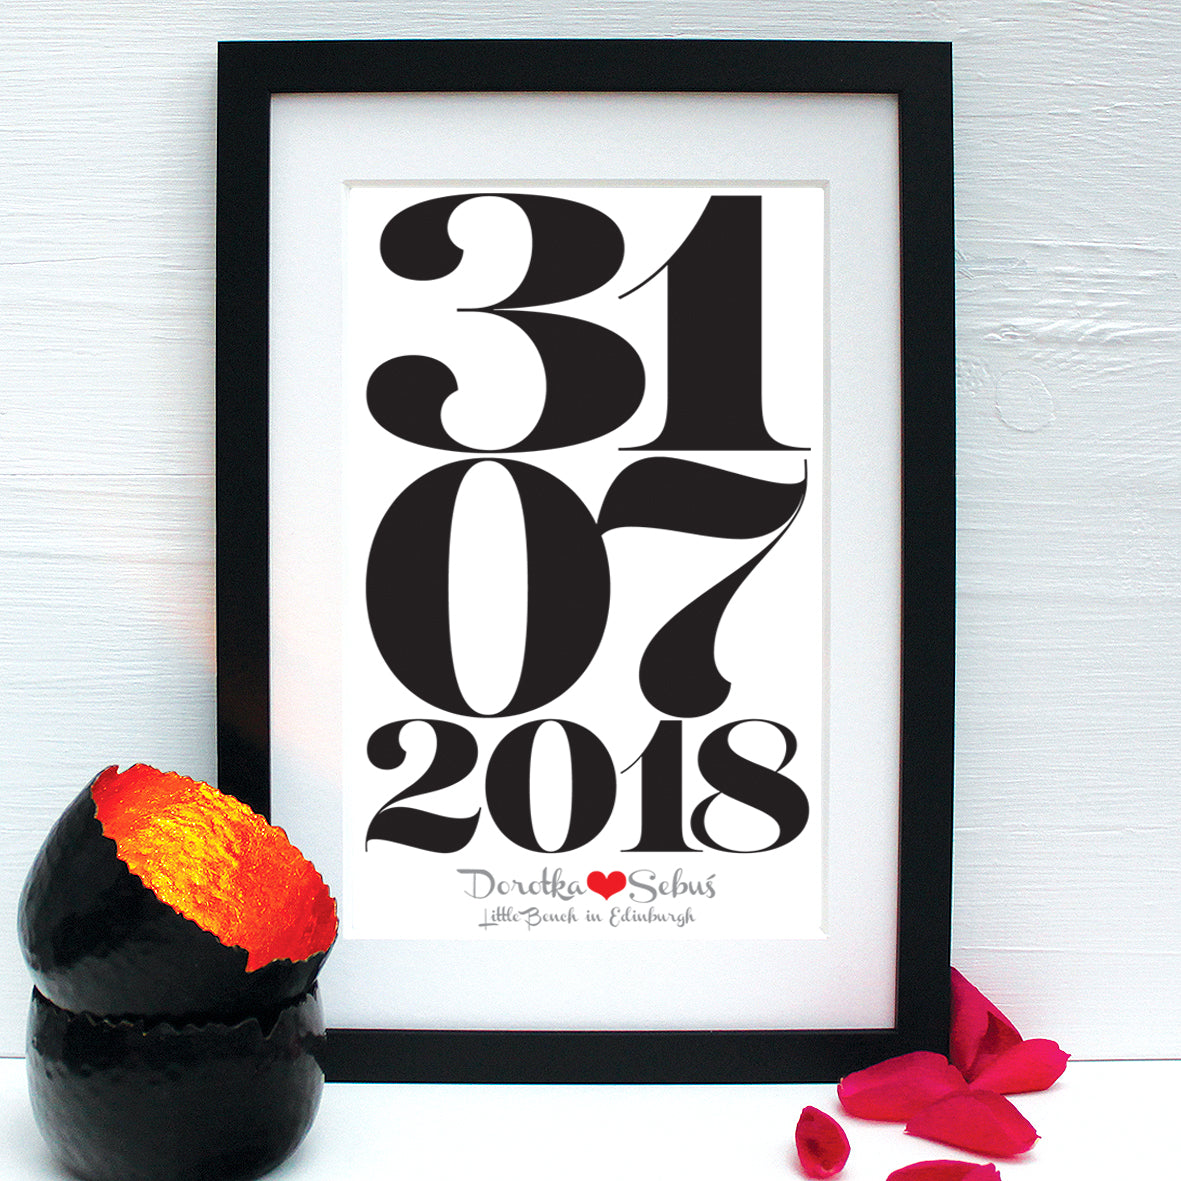 Personalised Wedding Date Framed Print